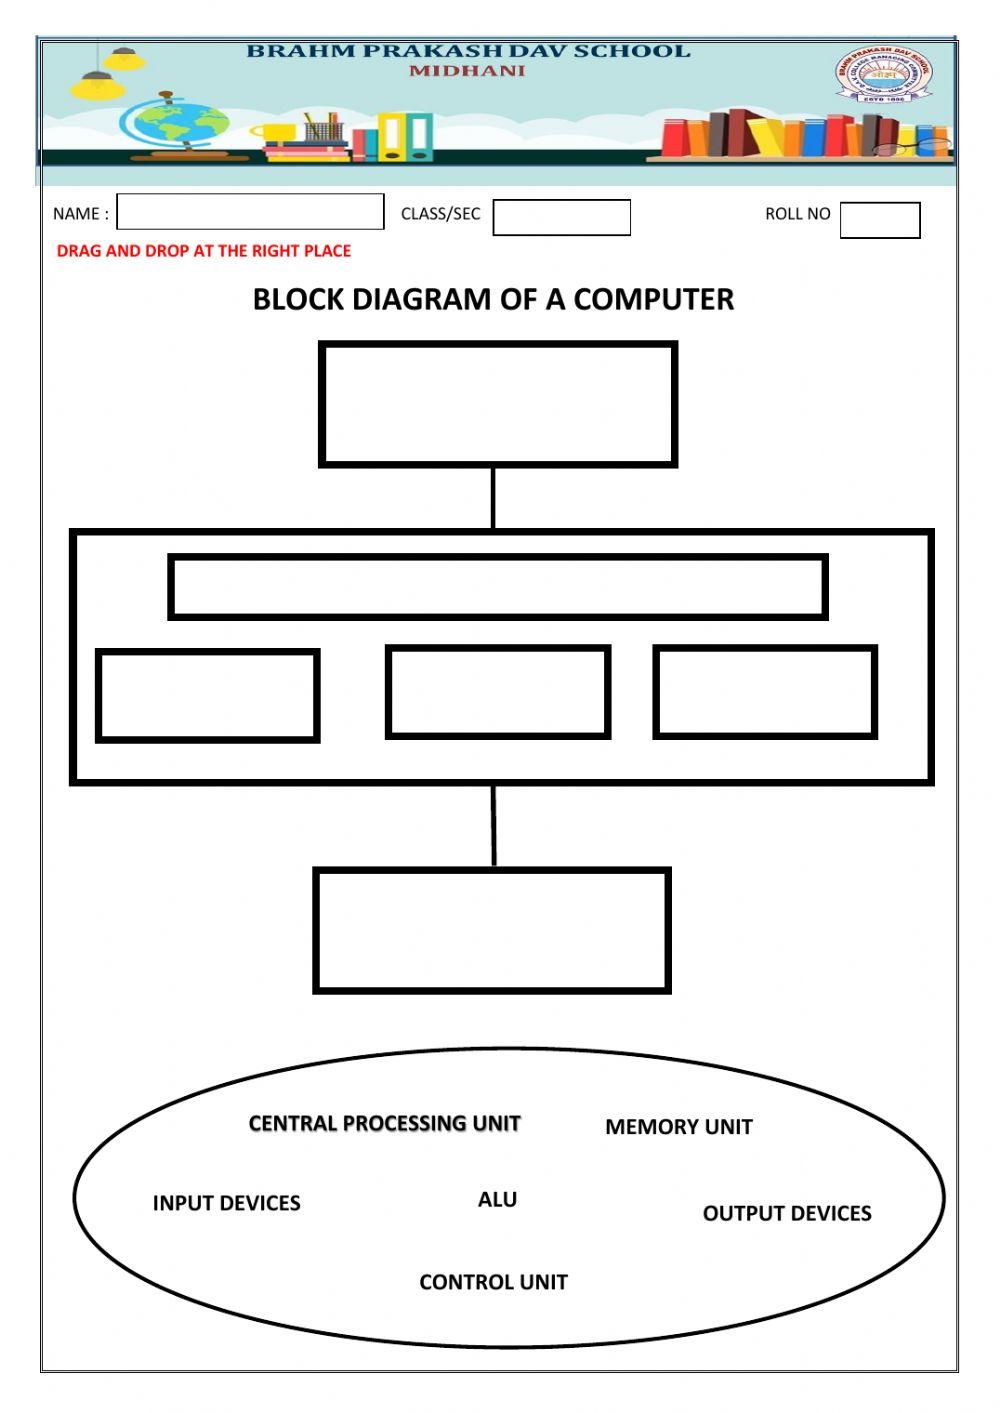 Block diagram of a computer